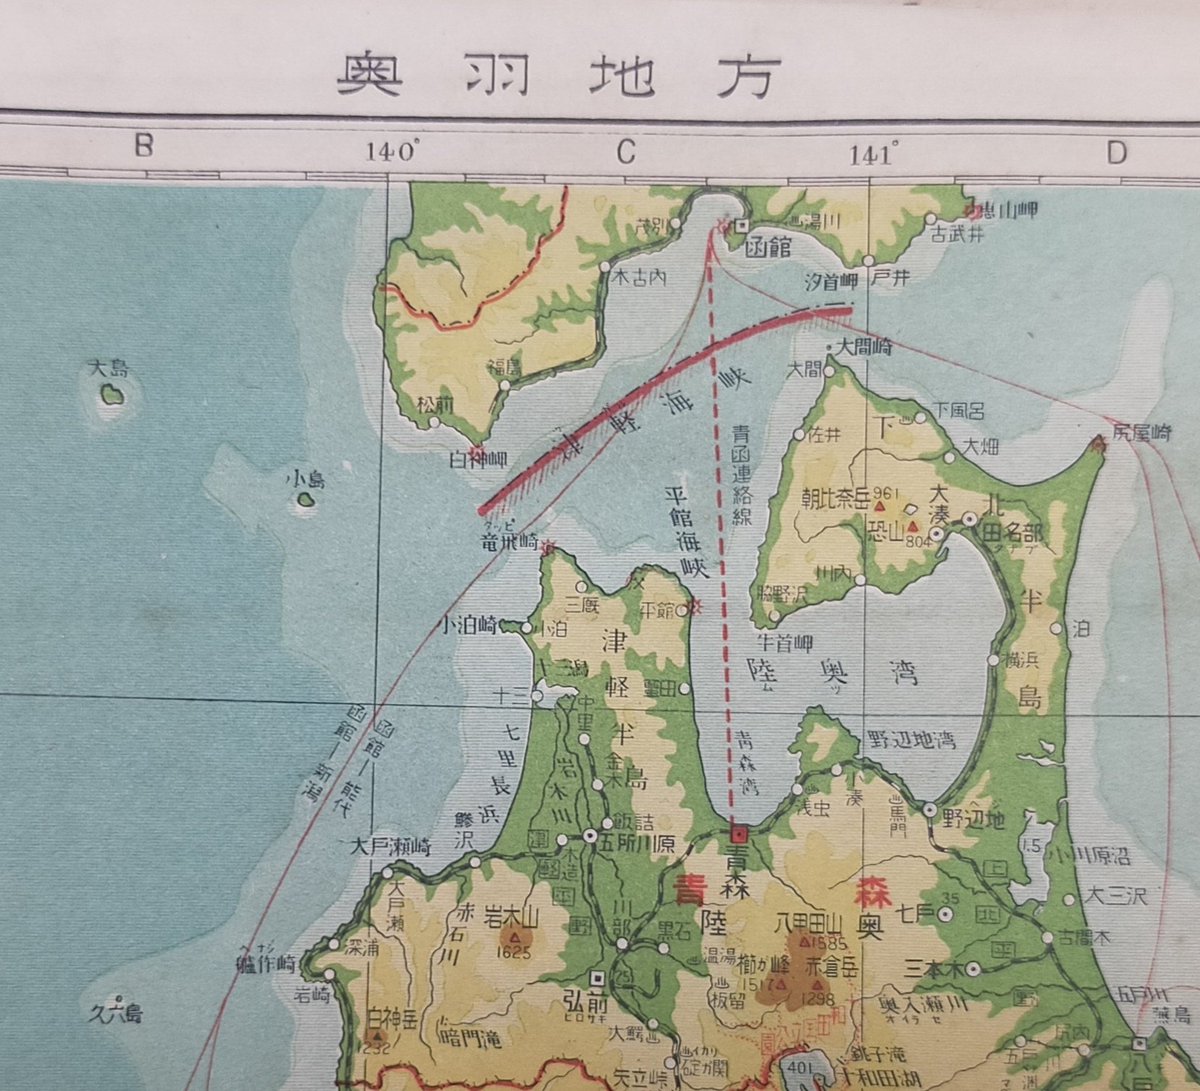 @Harita_arayshi 戦後も昭和30年ぐらいまでは奥羽地方と書かれていたようですね。35年の地図帳では東北地方になっていたので、そのぐらいのときに何があったのか気になります。 